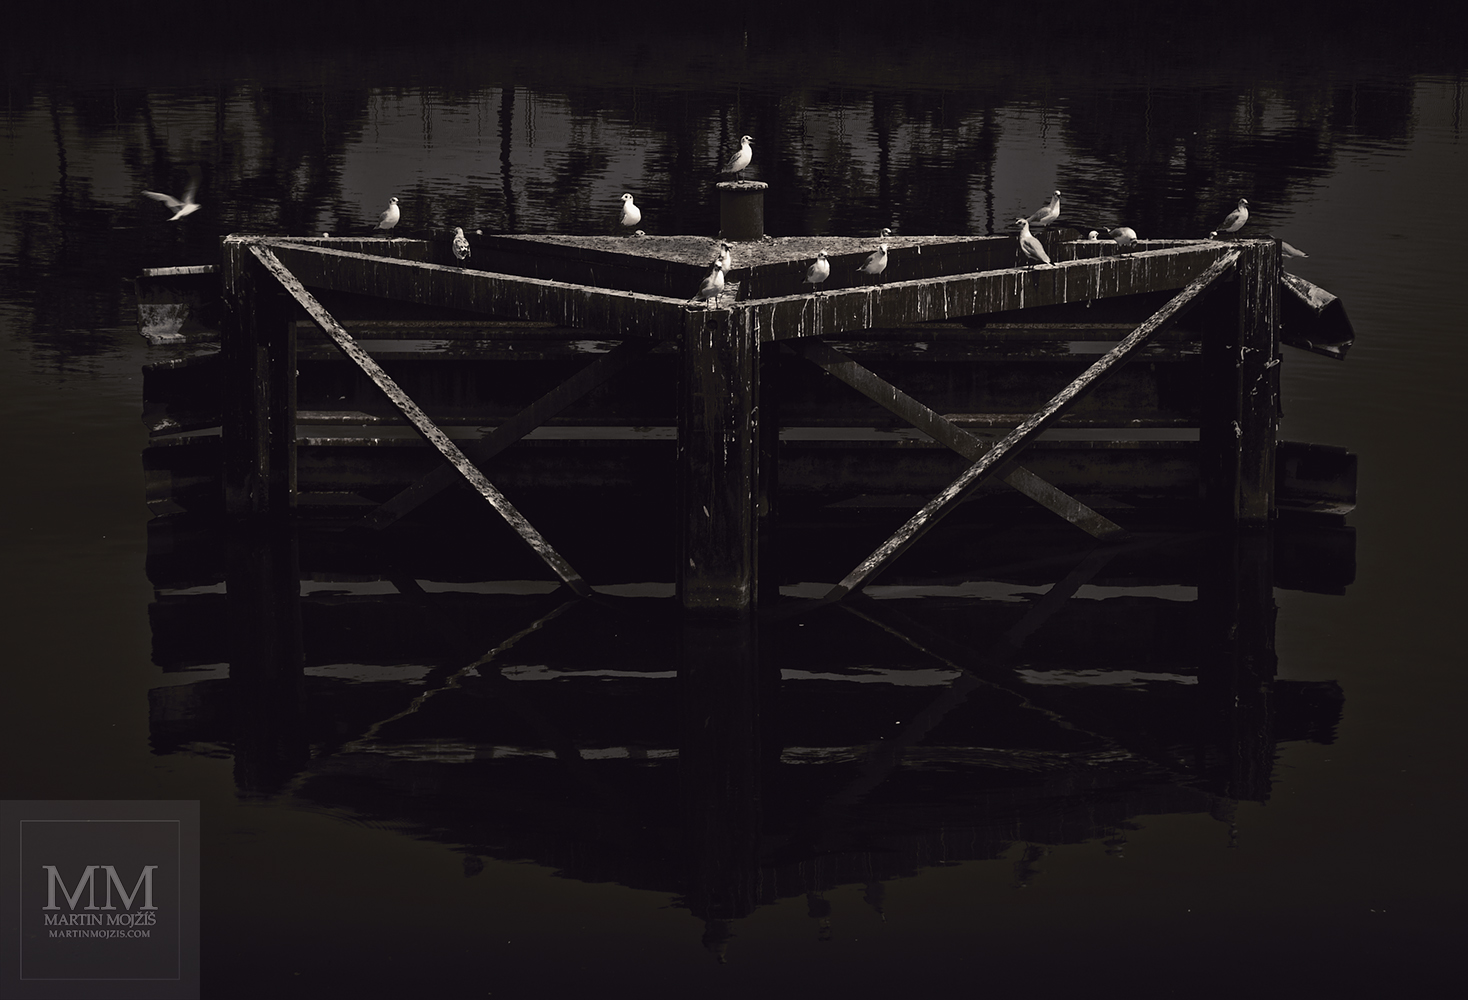 Vodní ptáci sedící na konstrukci sloužící ke kotvení lodí. Umělecká fotografie Martina Mojžíše s názvem PTÁCI.